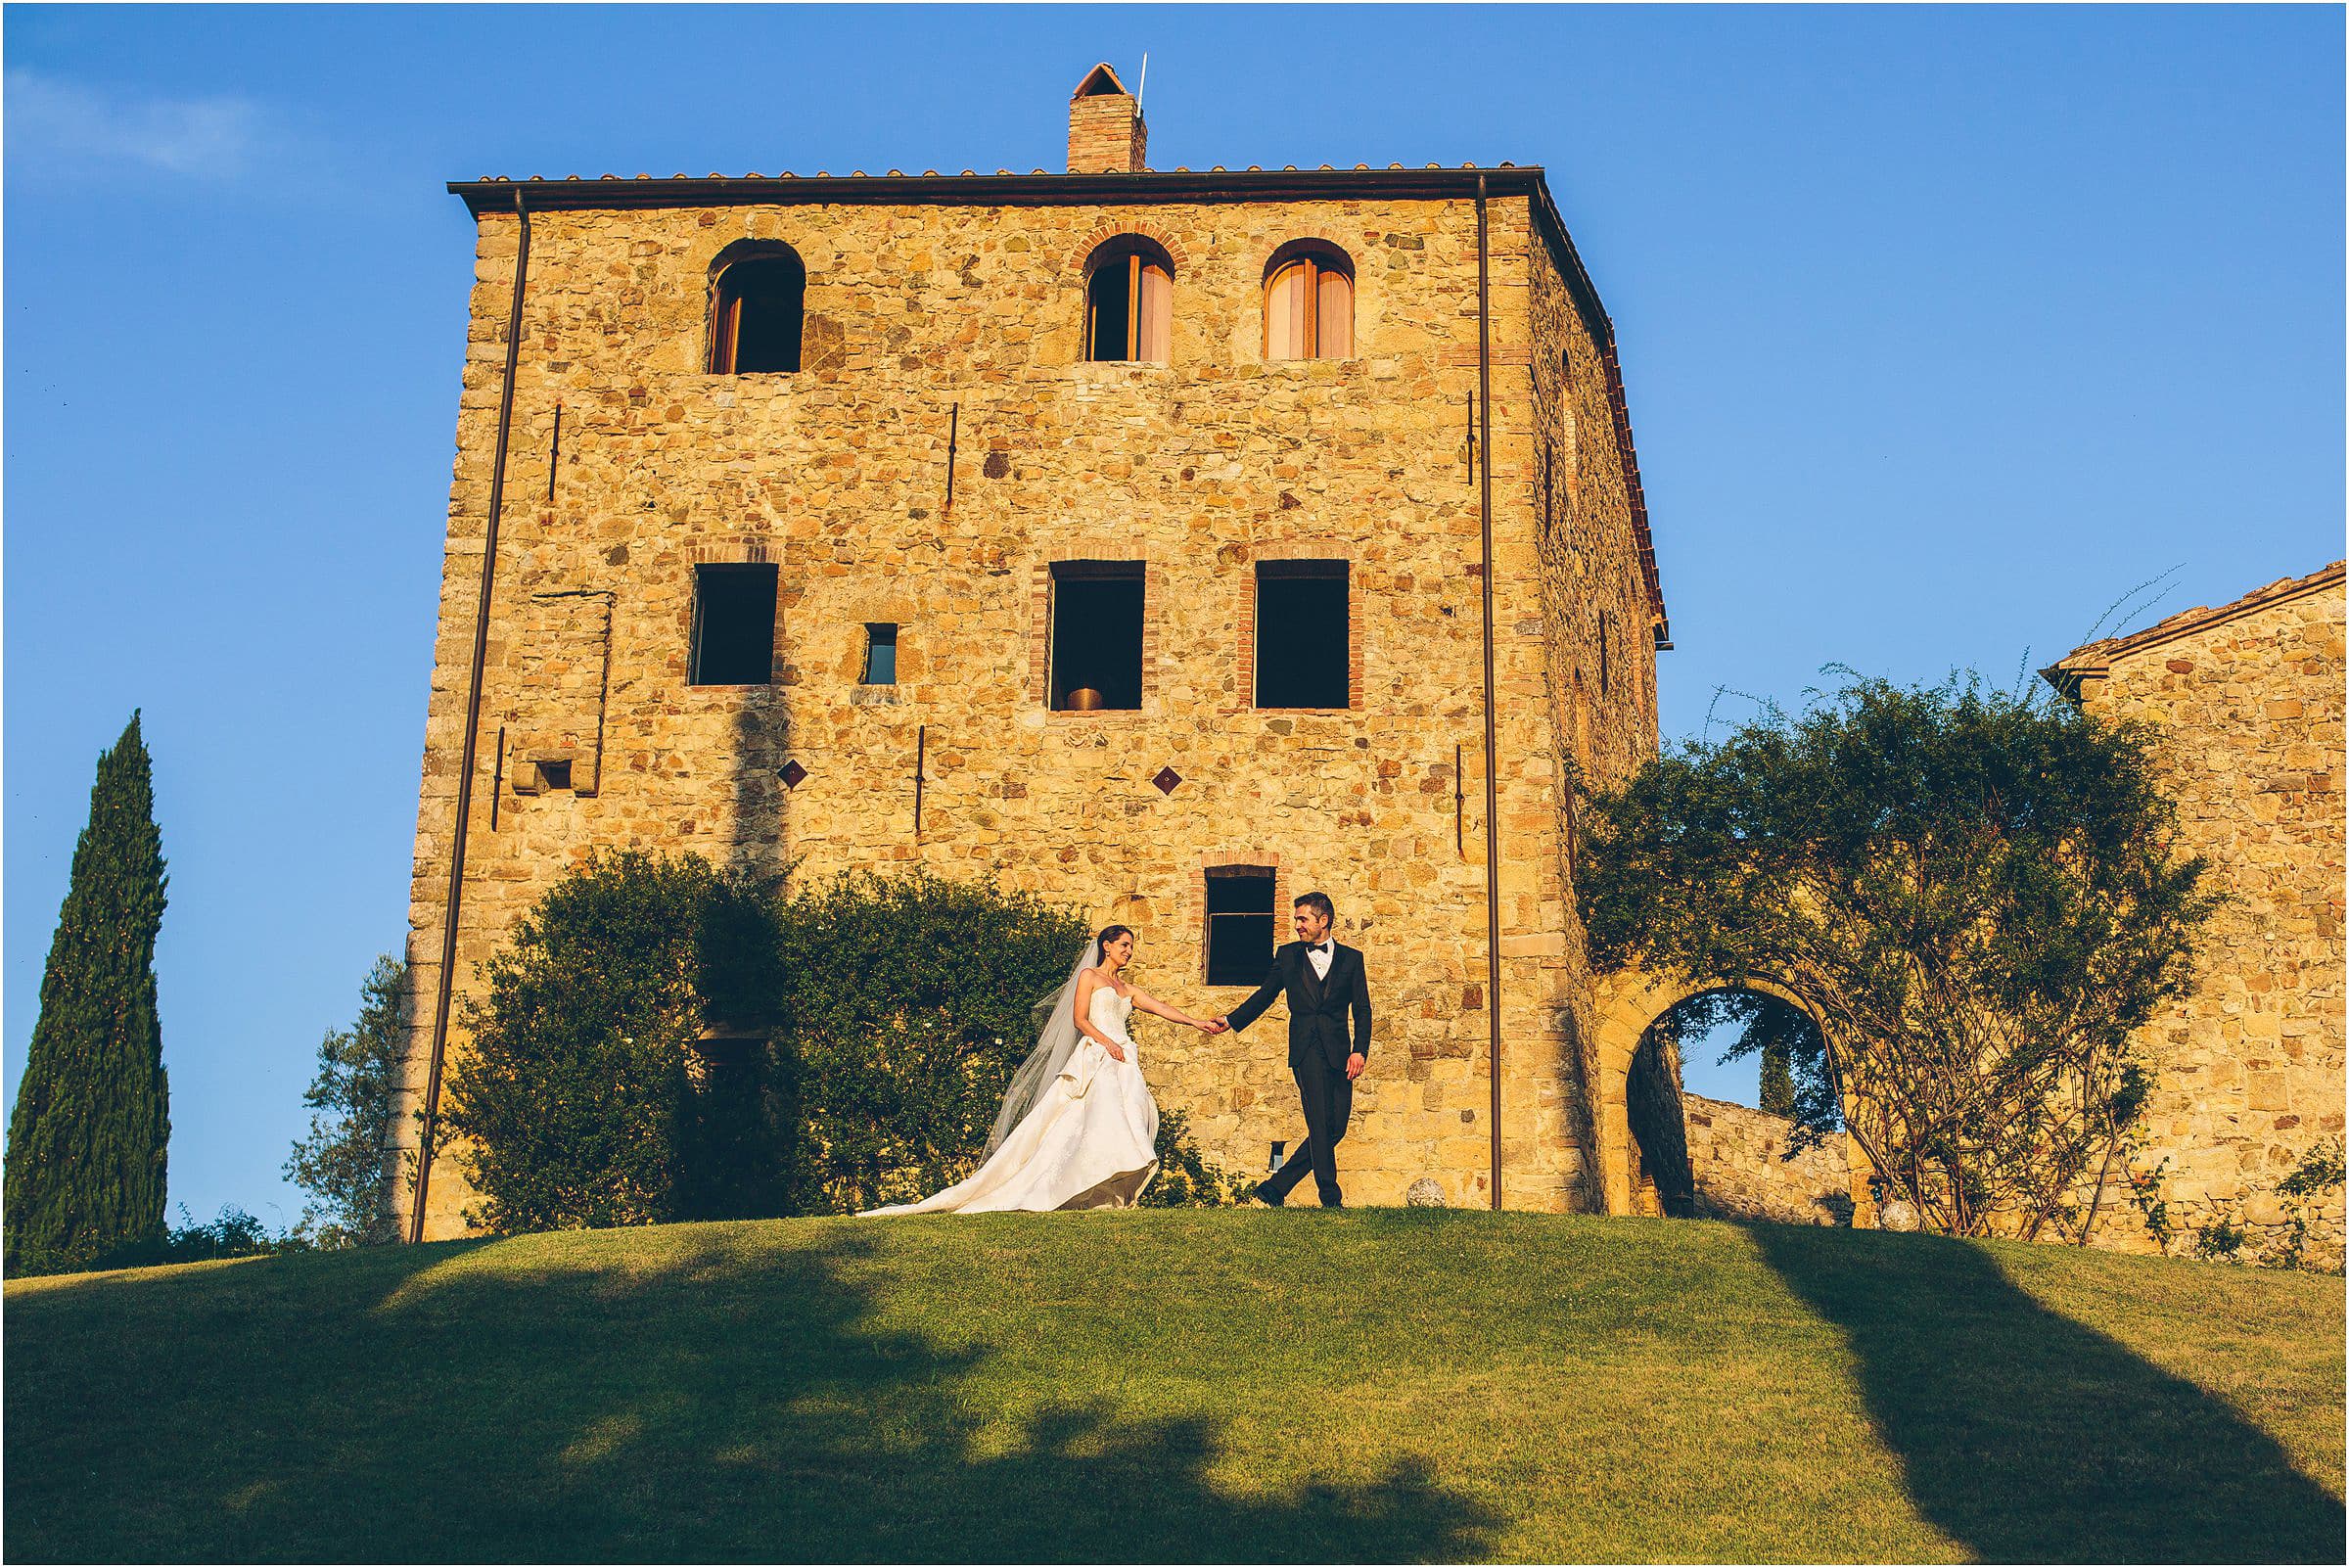 The bride and groom outside Castello di Vicarello in Tuscany